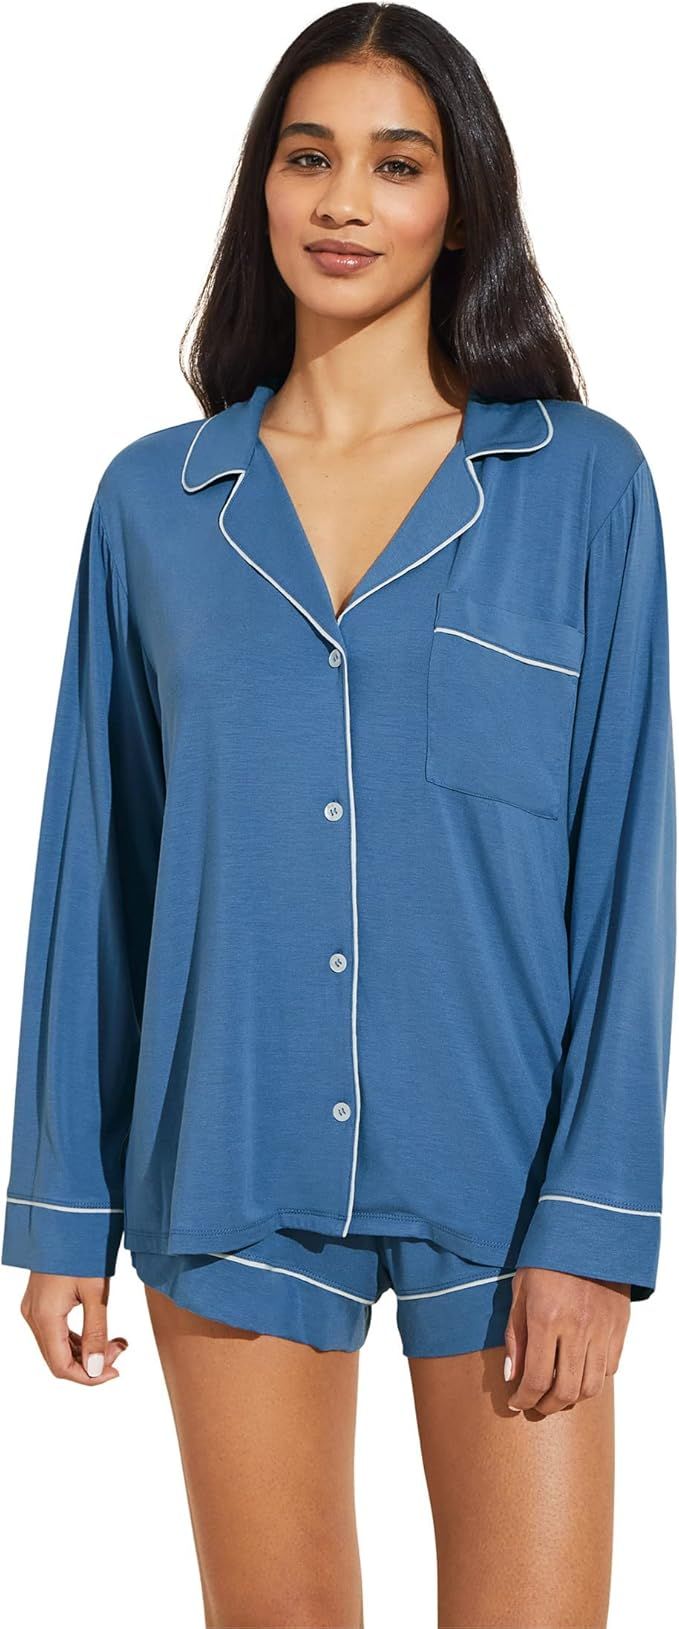 Eberjey Gisele Classic Women's Pajama Set | Long Sleeve Shirt + Shorts | Amazon (US)